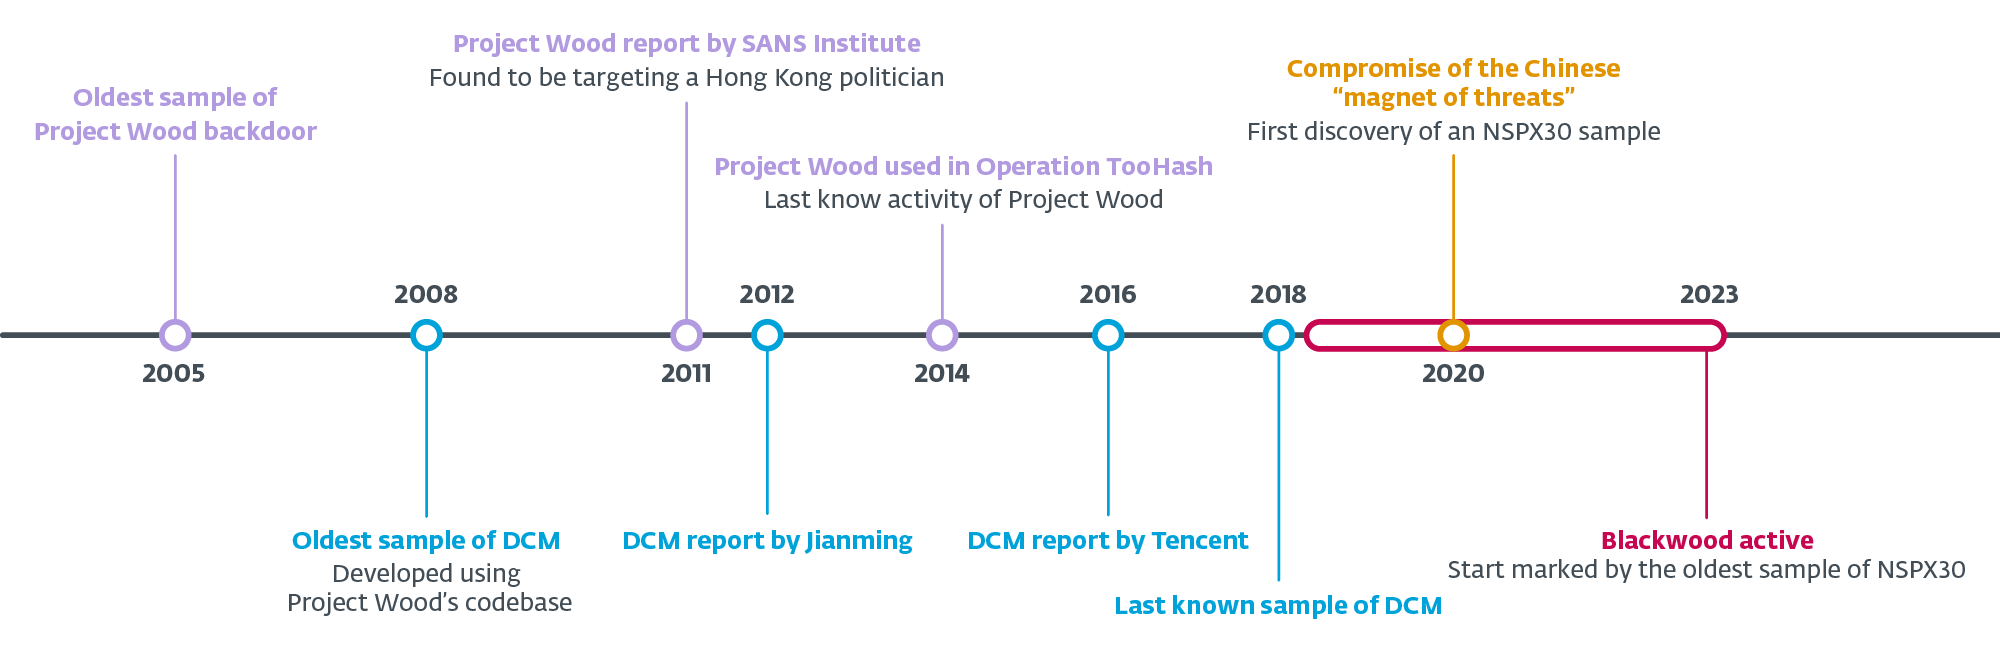 شکل 2. جدول زمانی انواع اصلی Project Wood، DCM، و NSPX30